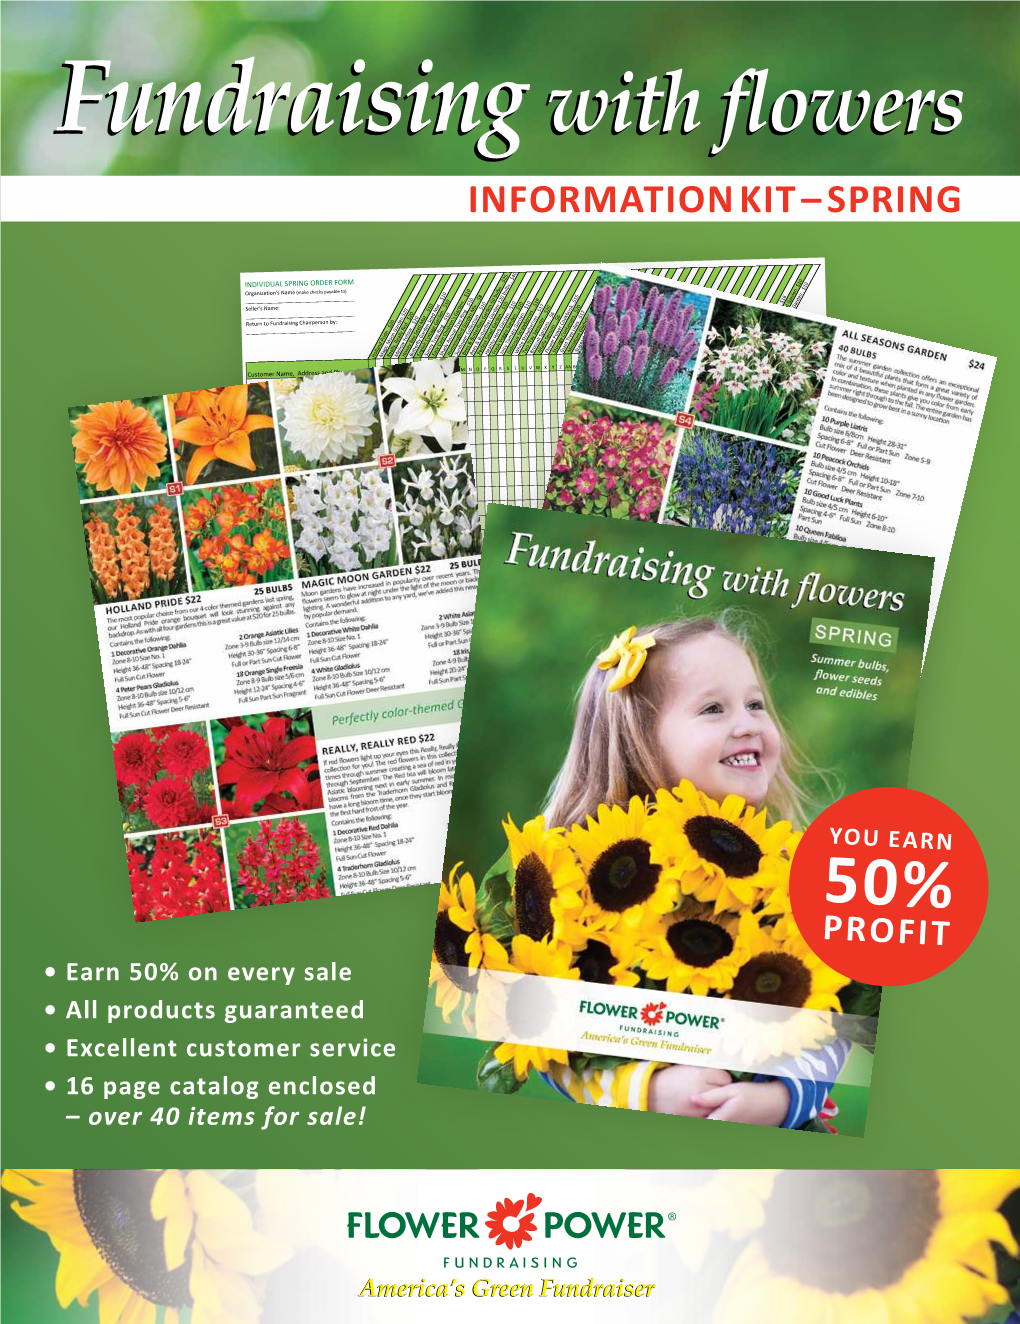 Information Kit – Spring